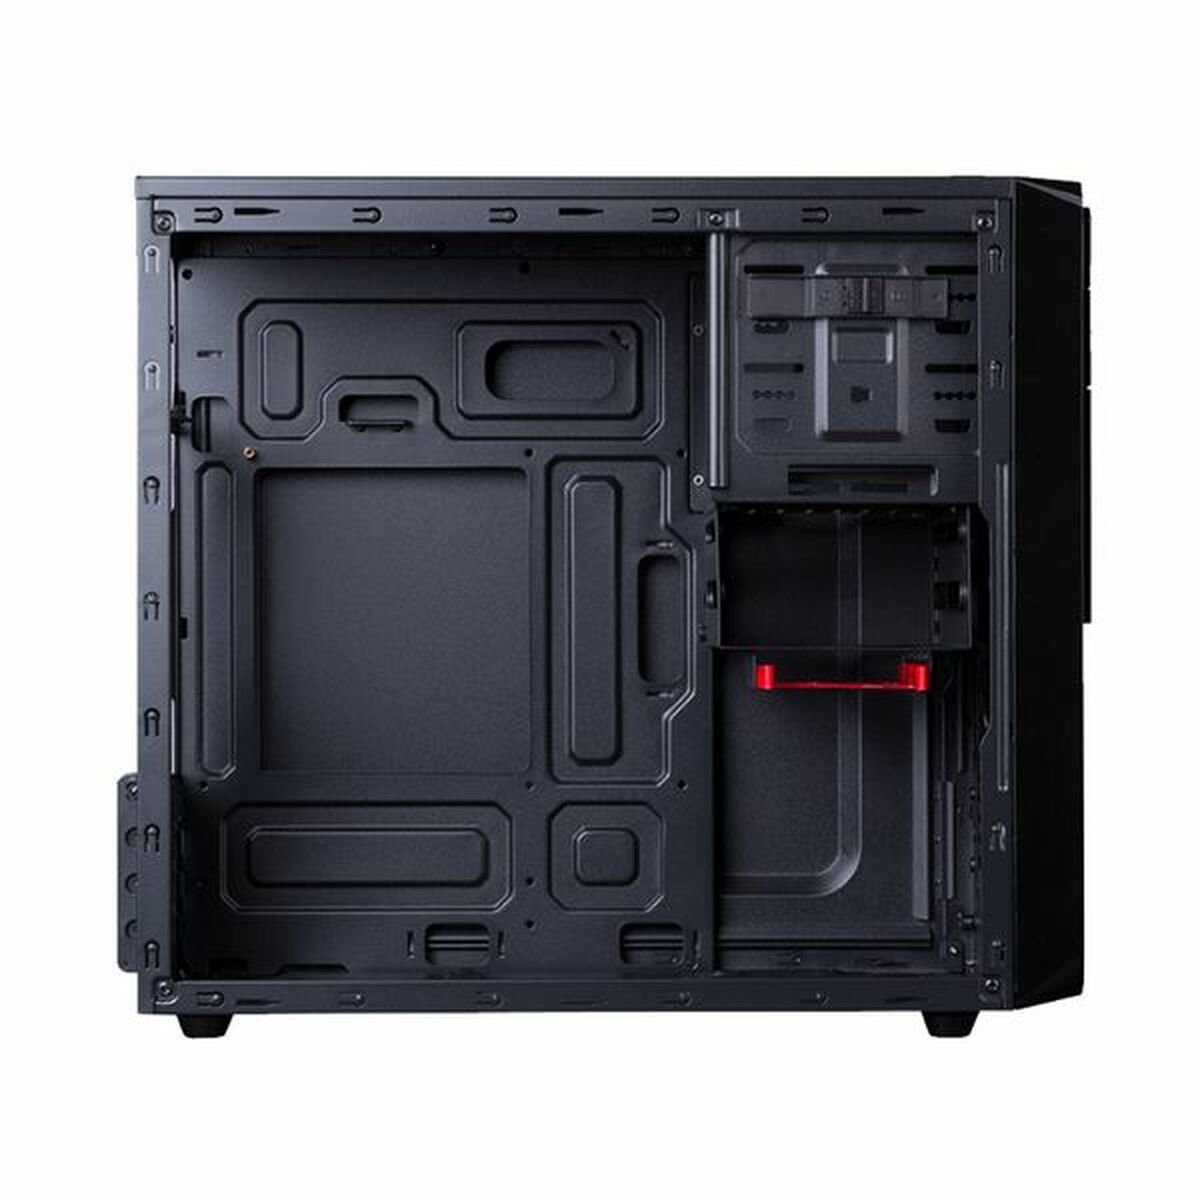 Κουτί Μέσος Πύργος ATX Hiditec CHA010012 USB 3.0 Q9 PRO 2 Μαύρο